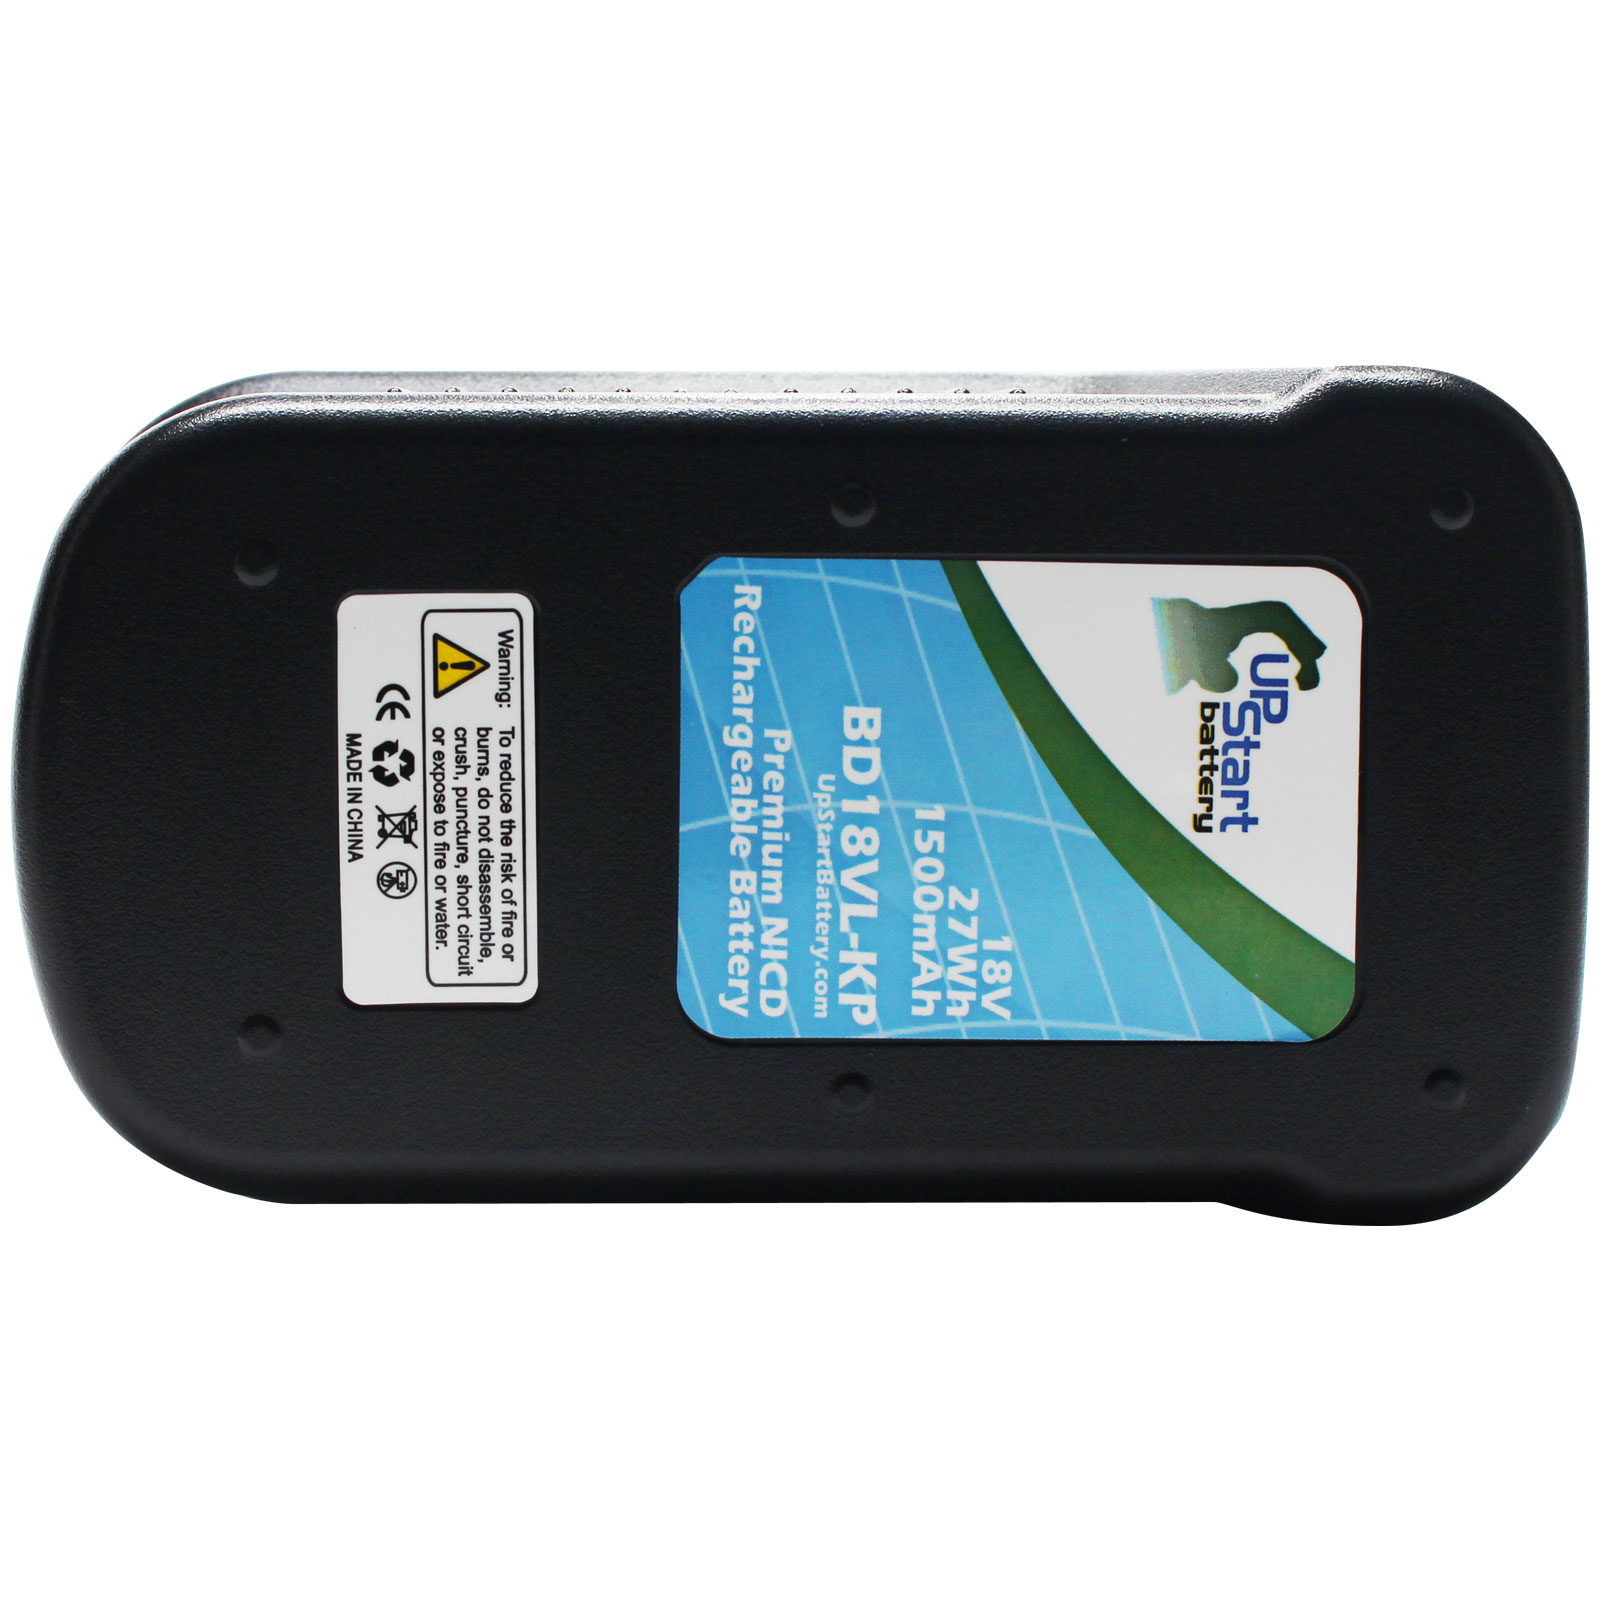 black decker 18v lithium battery pack from